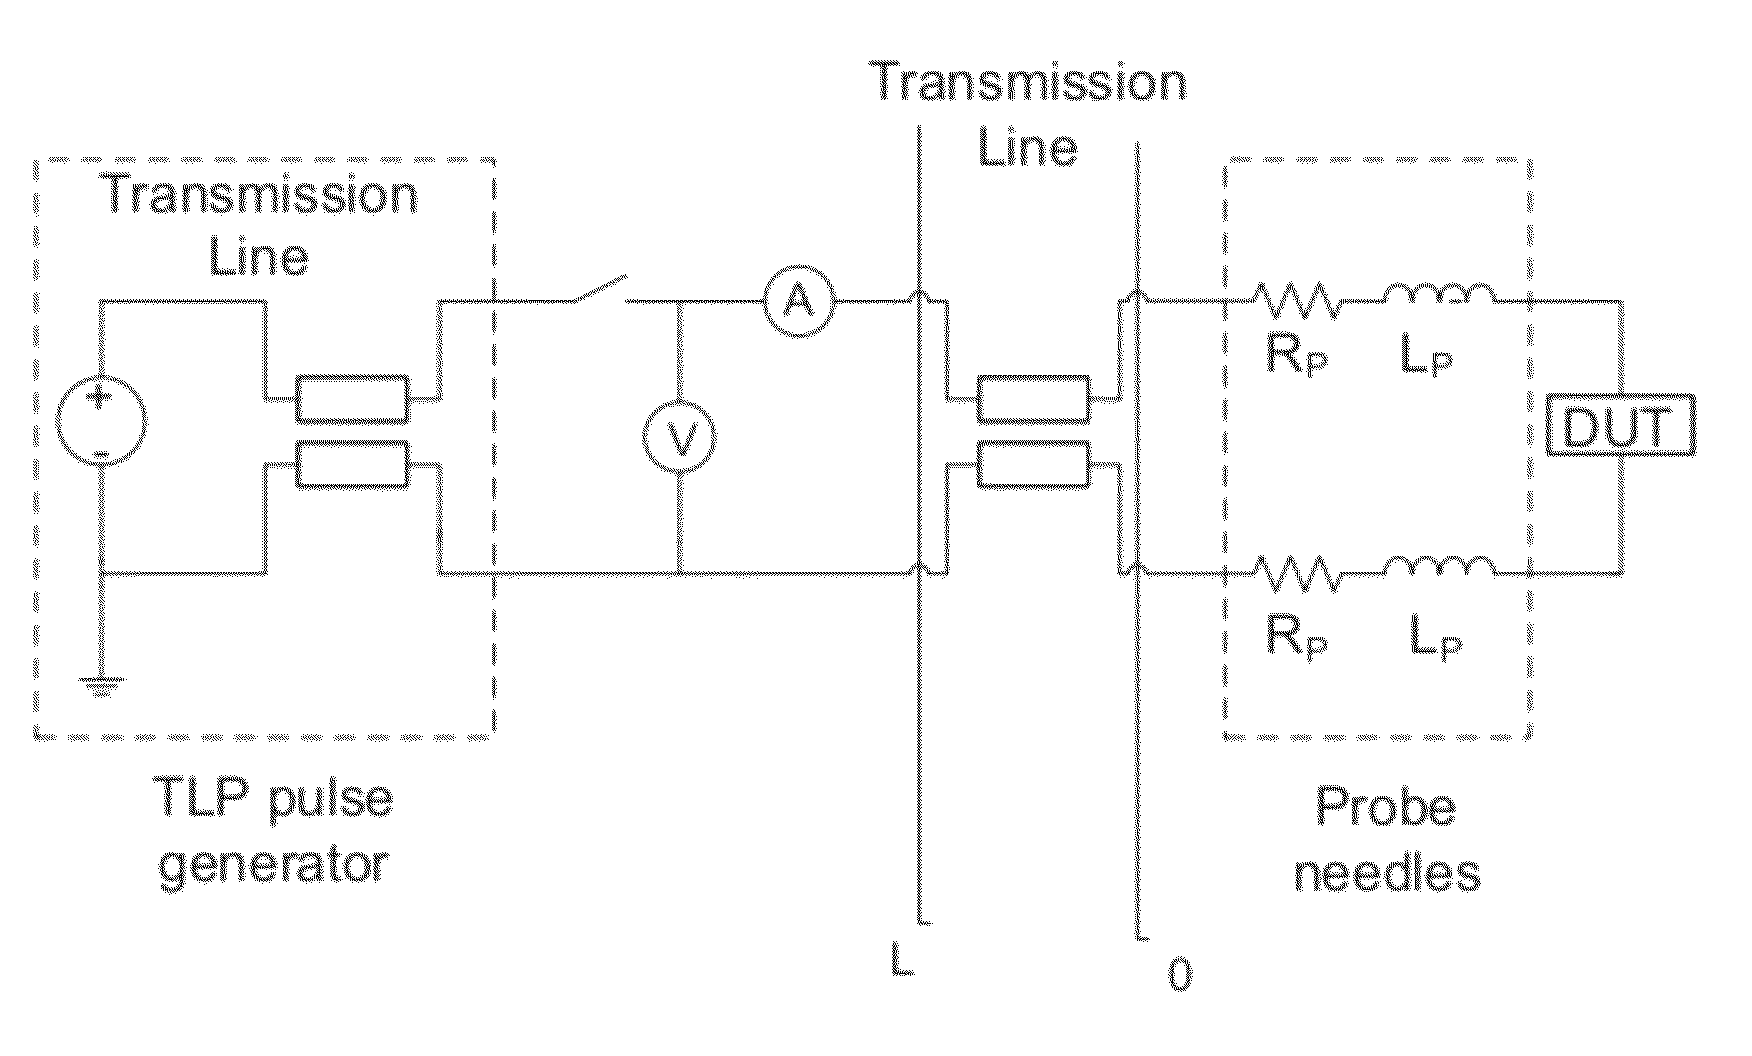 Method for calibrating a transmission line pulse test system